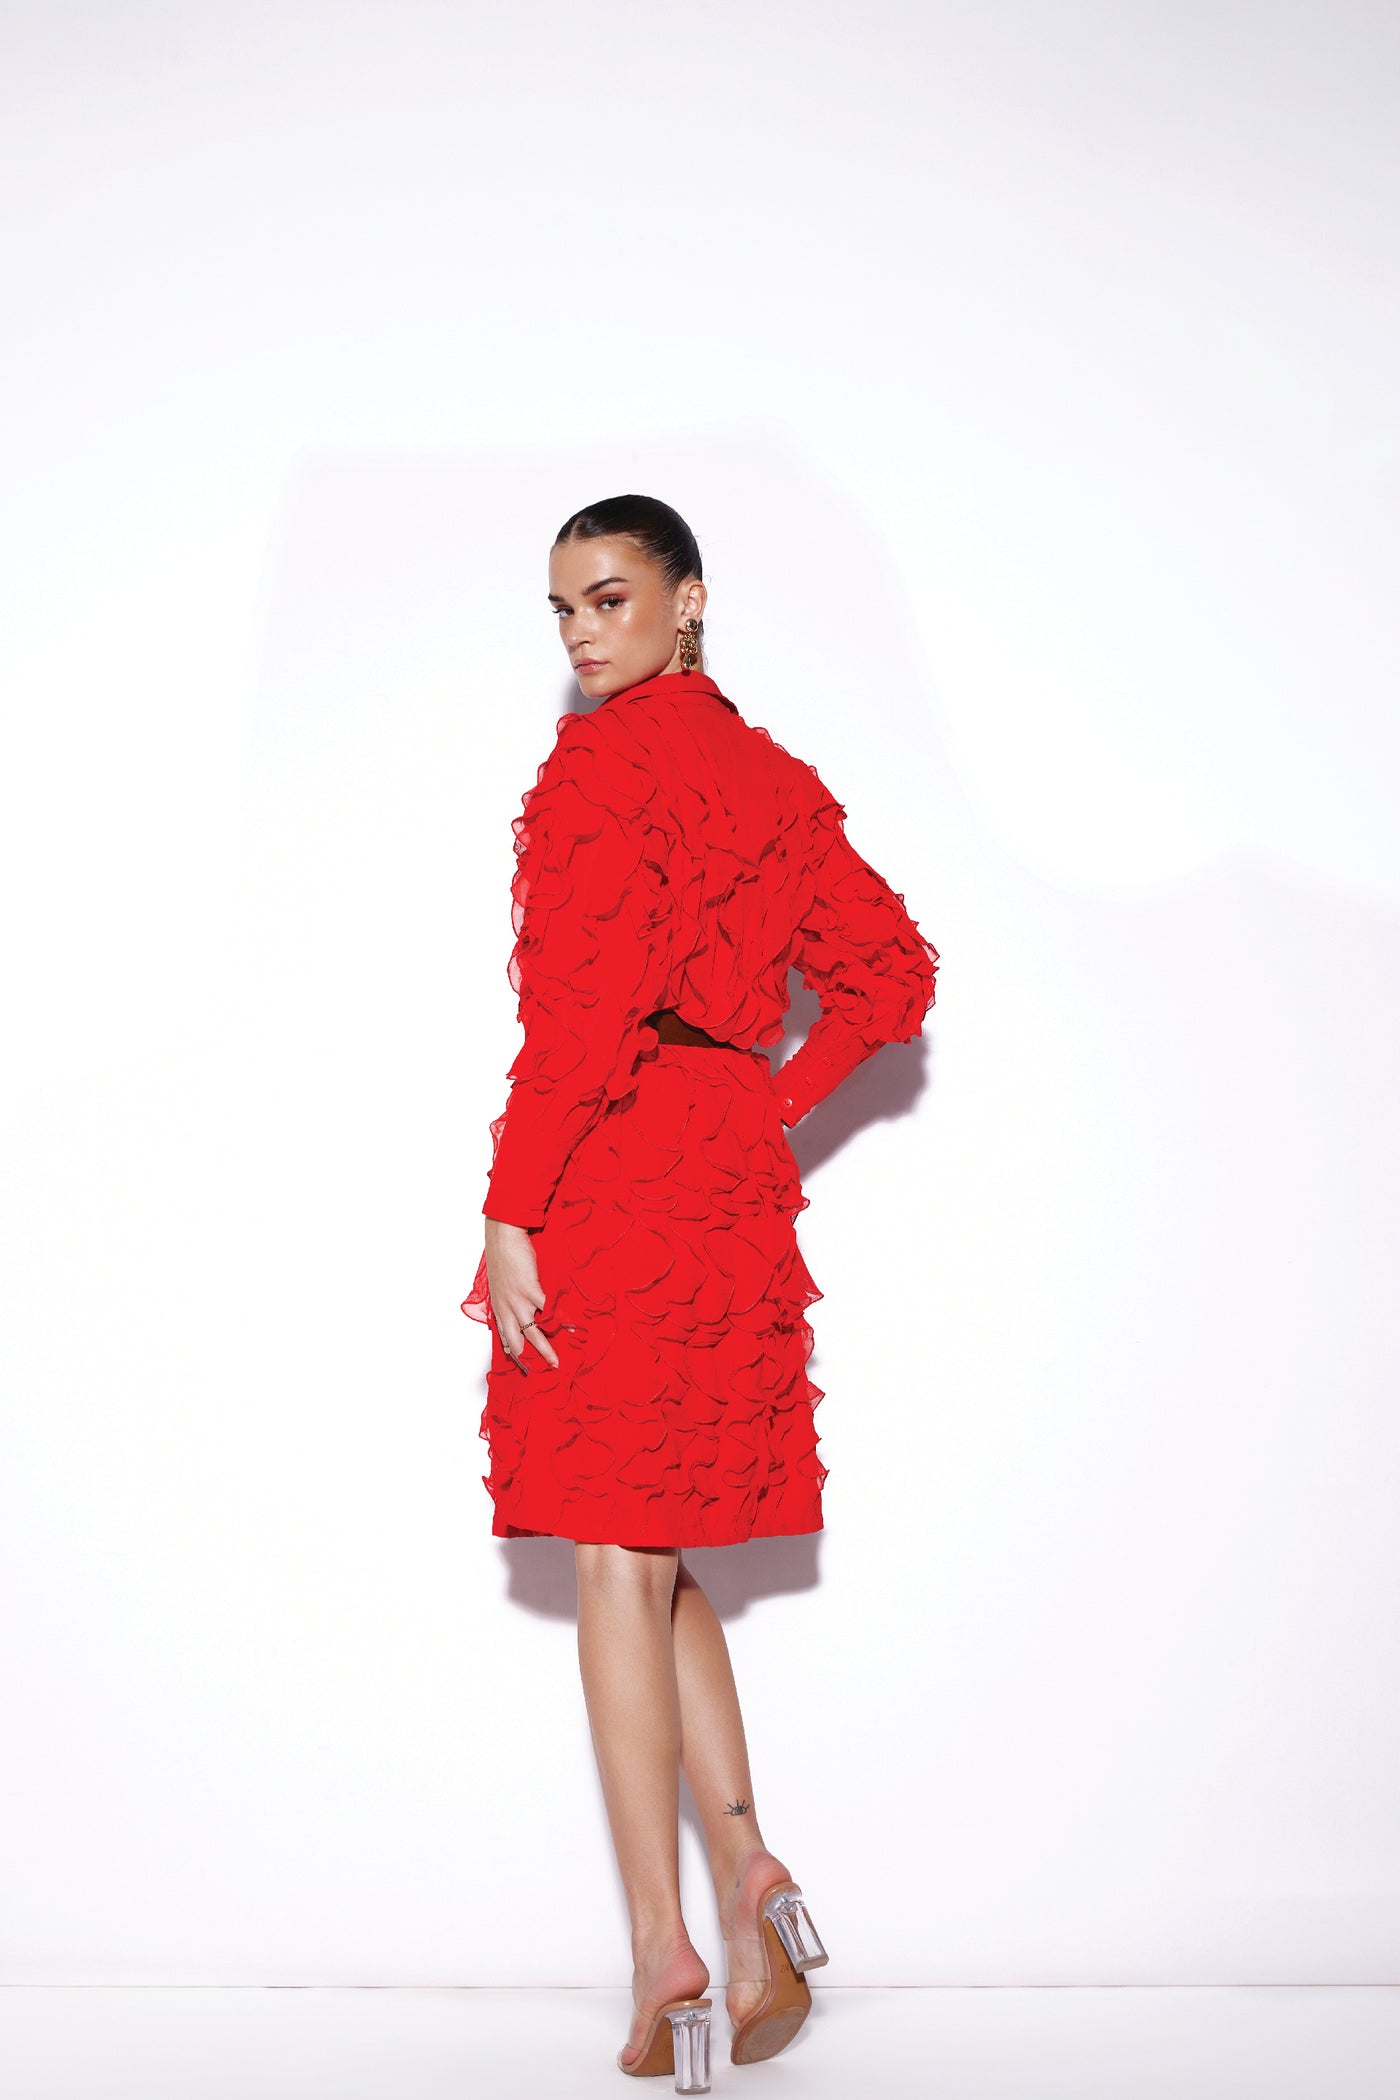 Verb Sadie Ruffle Dress indian designer wear online shopping melange singapore